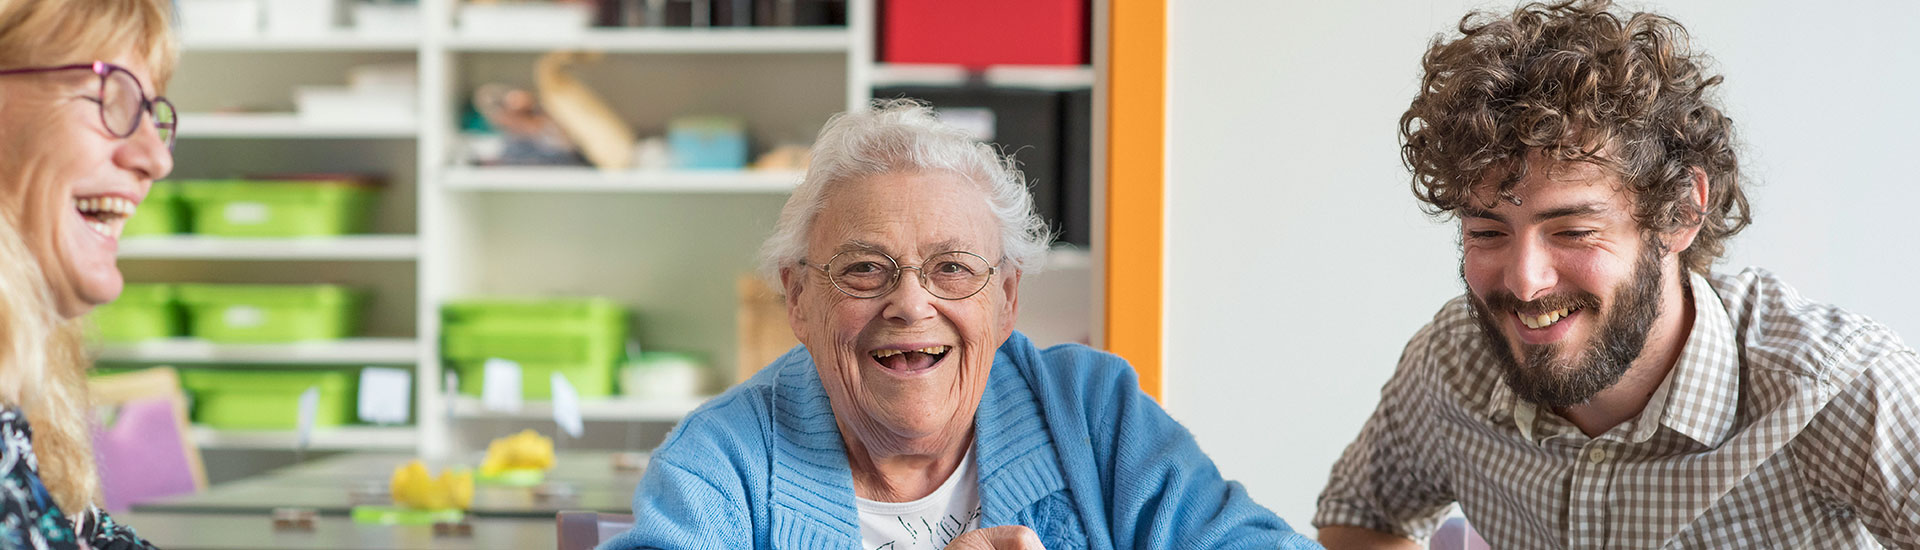 Aide et accompagnement à domicile pour les personnes âgées